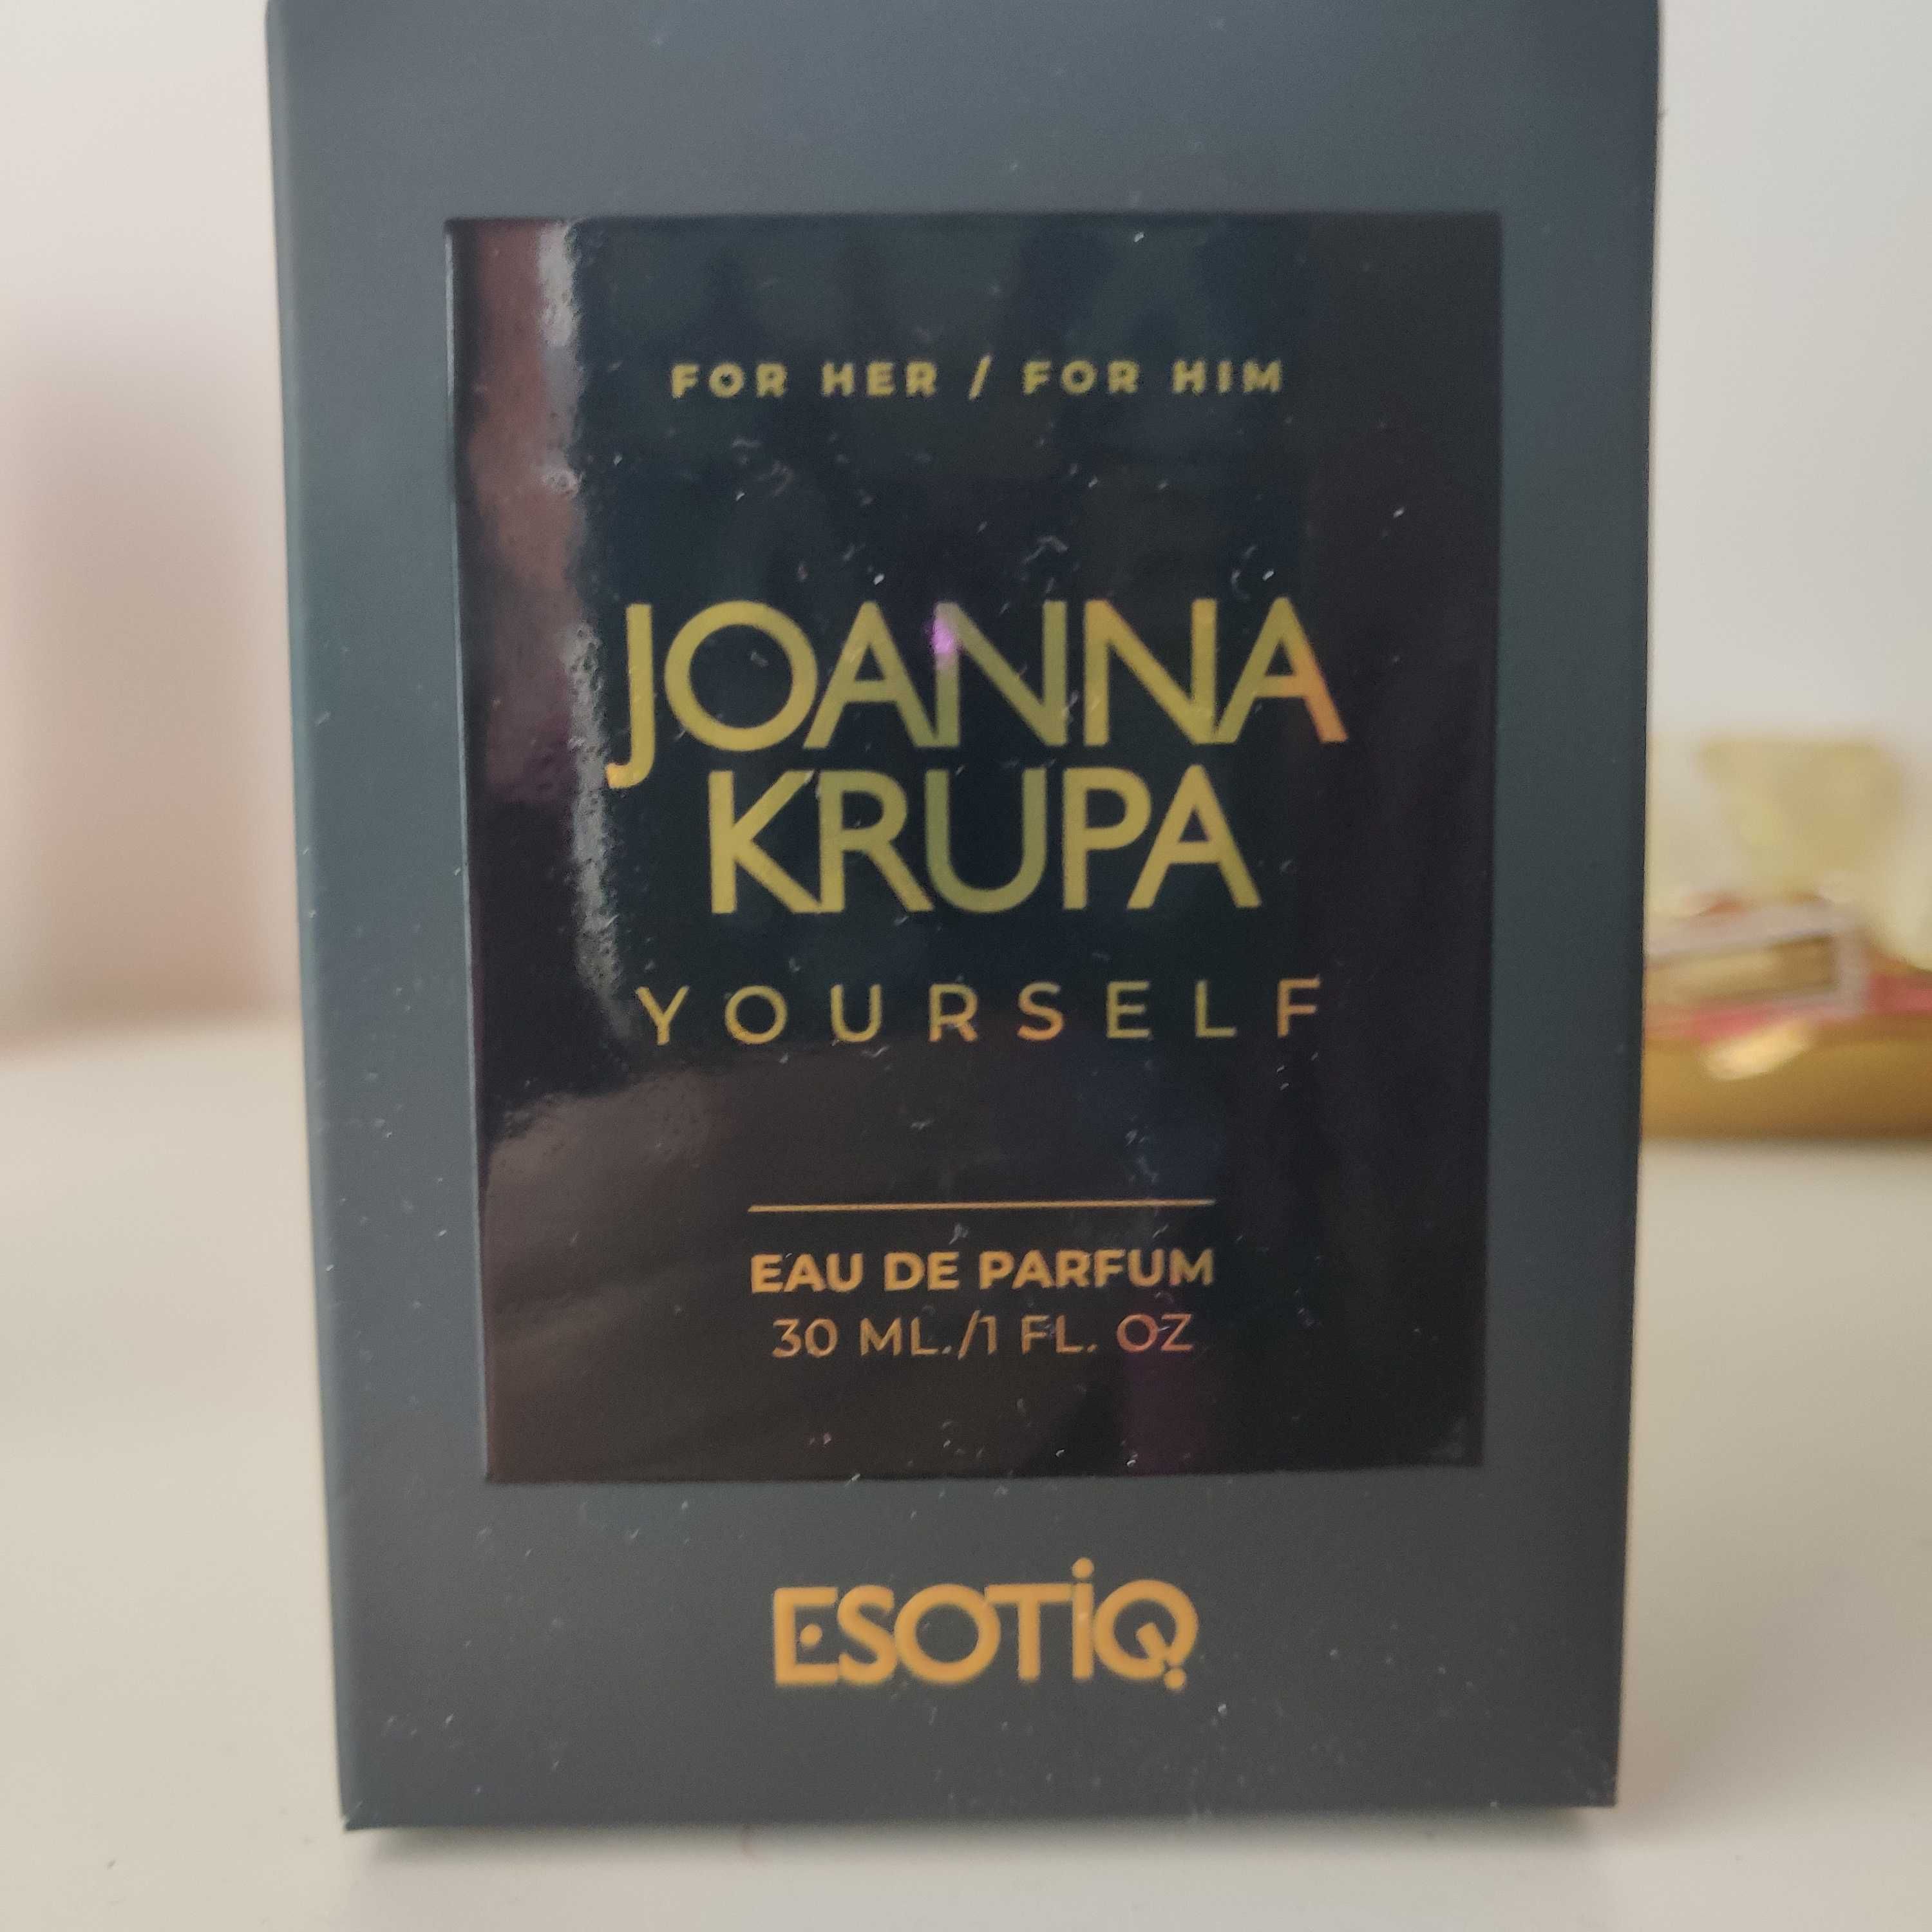 Joanna Krupa Yourself 30 ml.